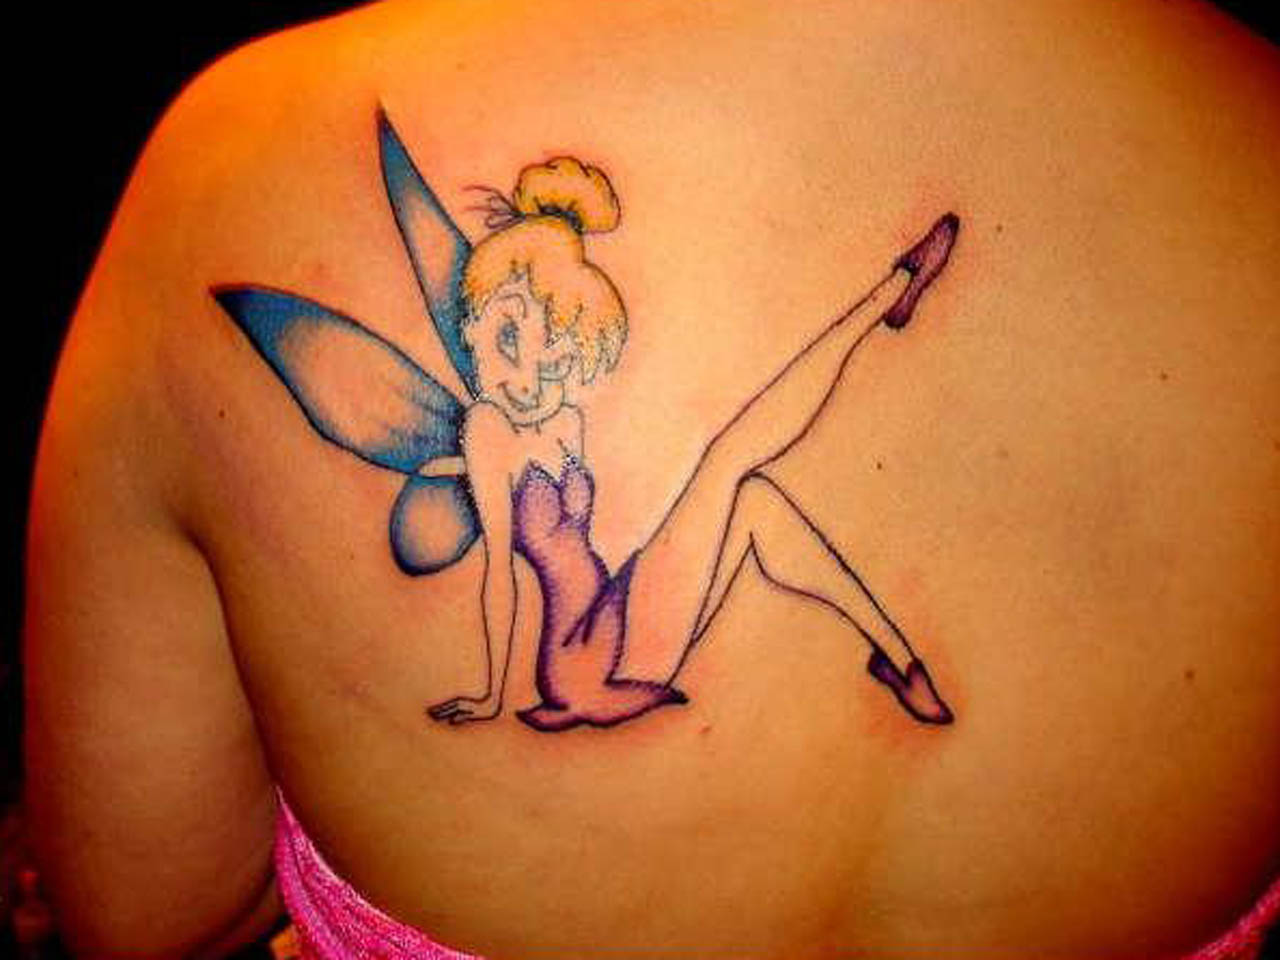 Tinkerbell tattoo on the arm done by @tattooist_doy | www.otziapp.com |  Disney tattoos, Tattoos, Belle tattoo